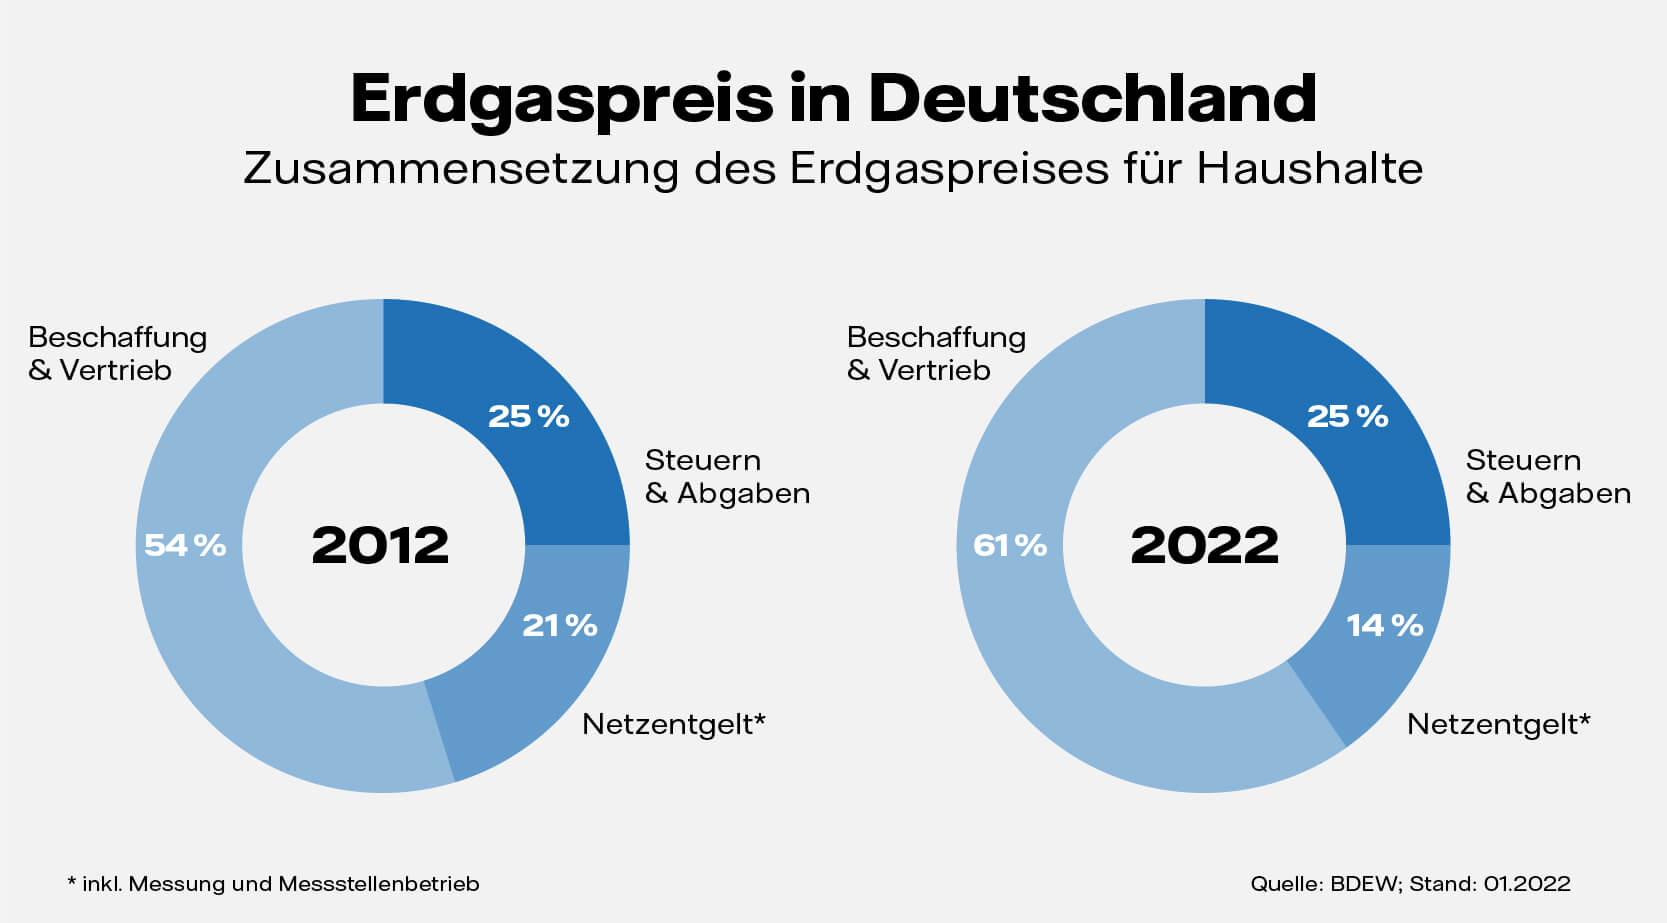 Grafik: Zusammensetzung vom Erdgaspreis in Deutschland 2012 vergl. 2022